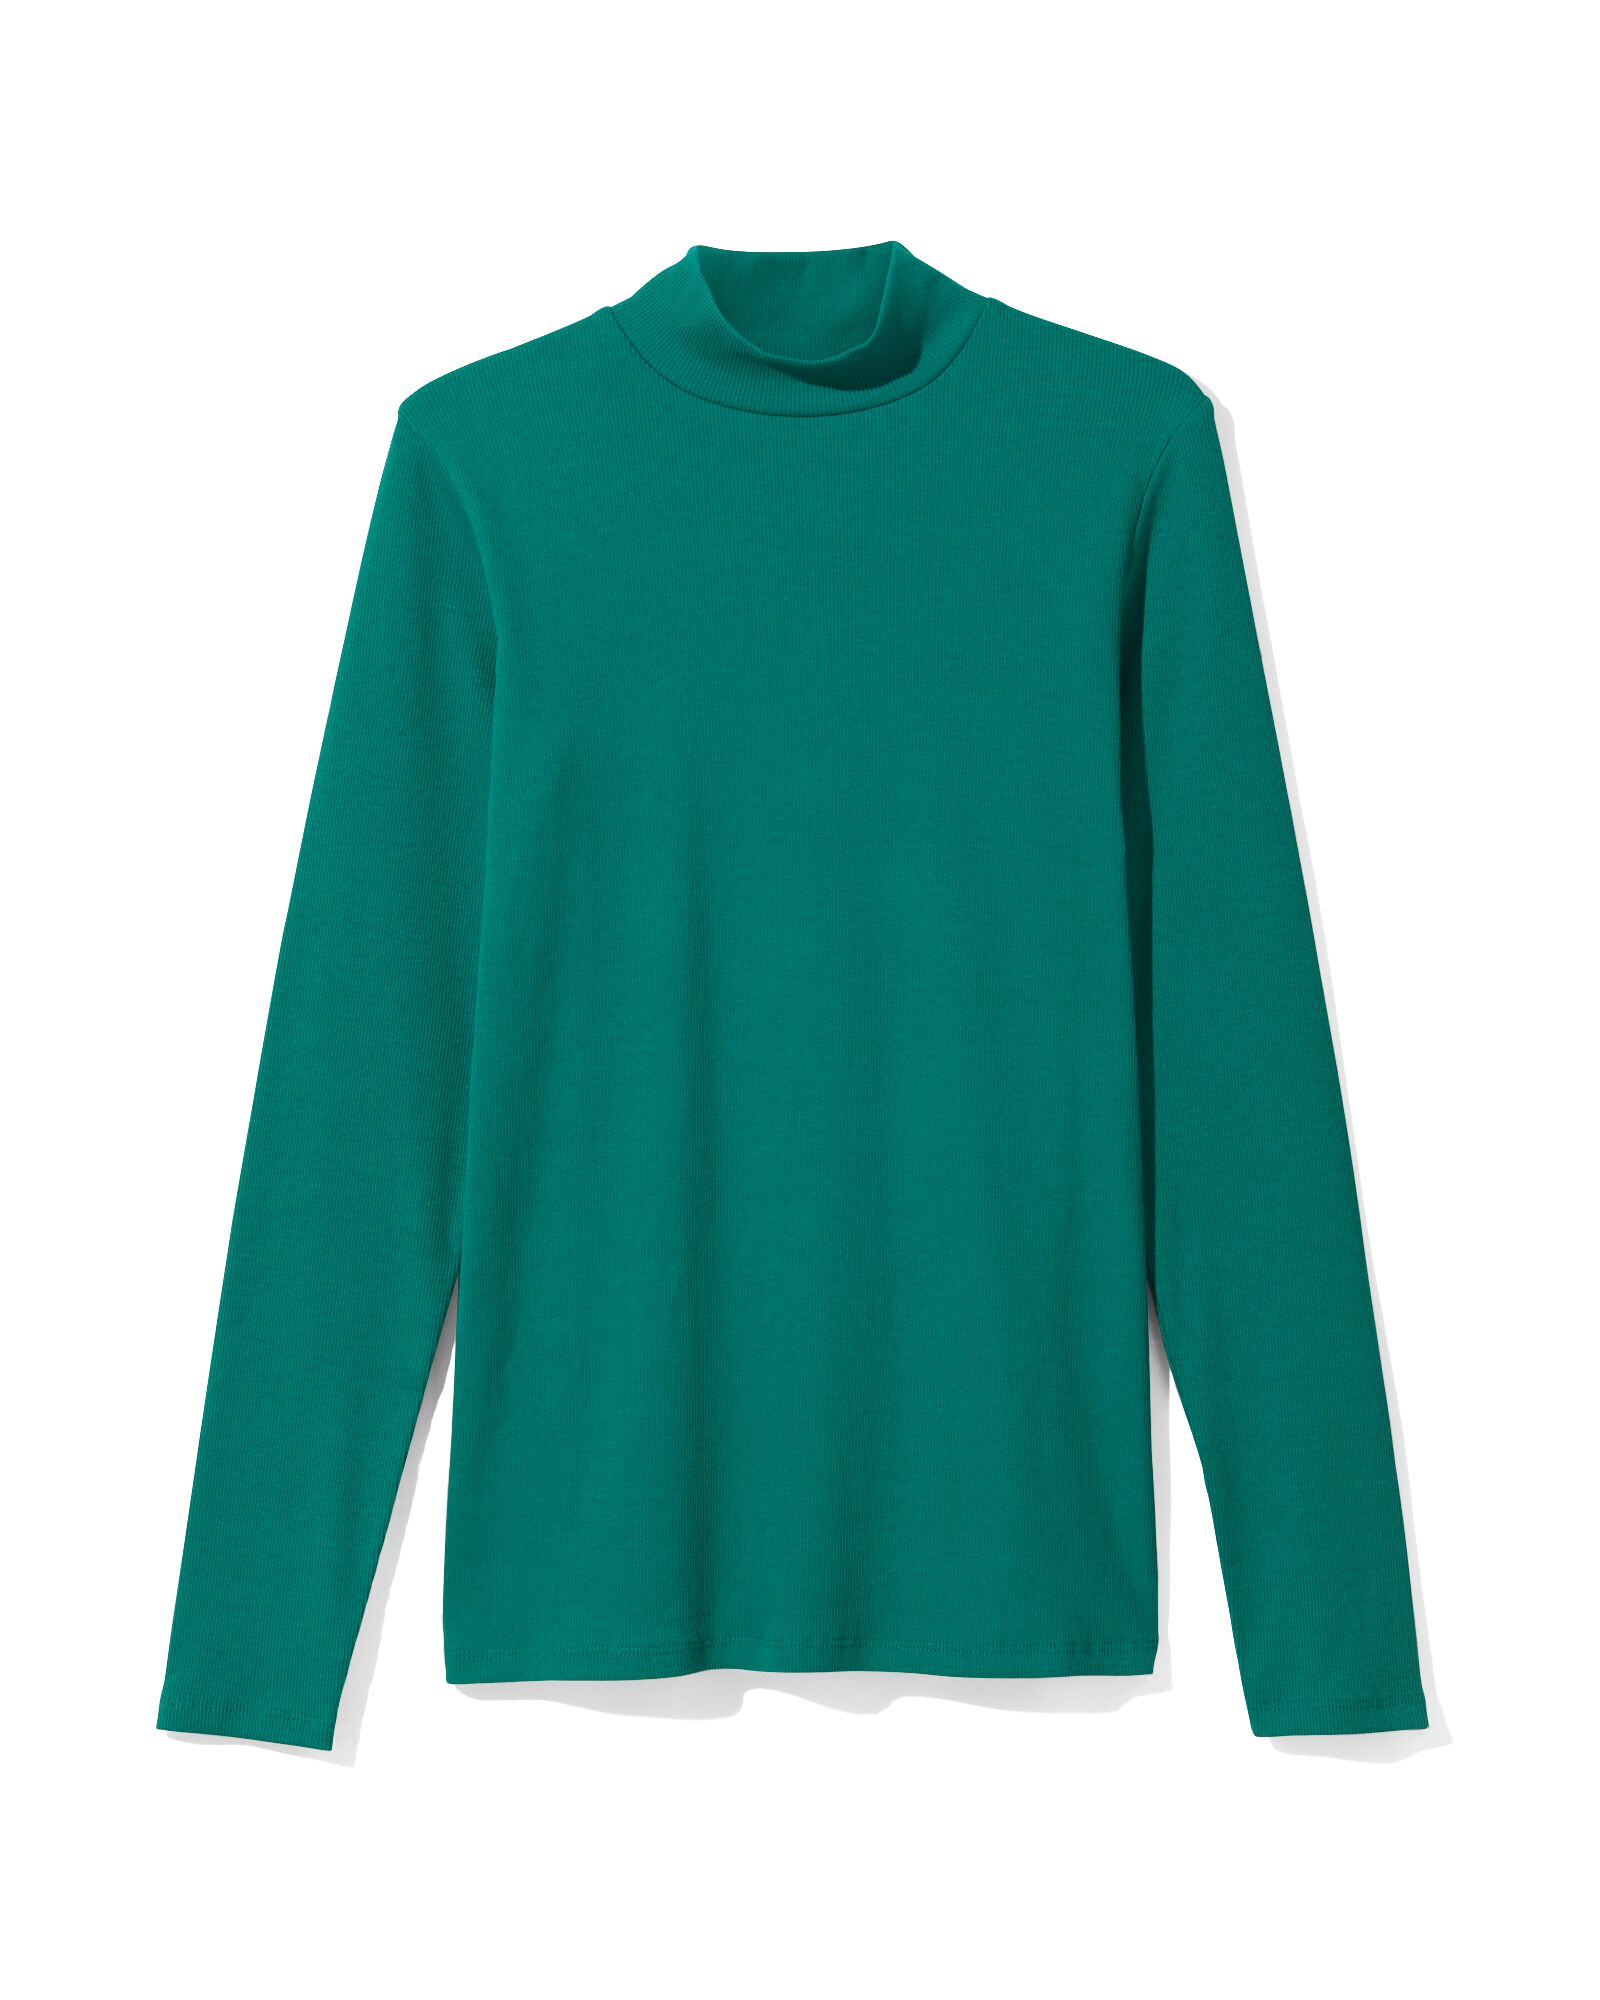 t-shirt femme Clara côtelé vert S - 36239341 - HEMA